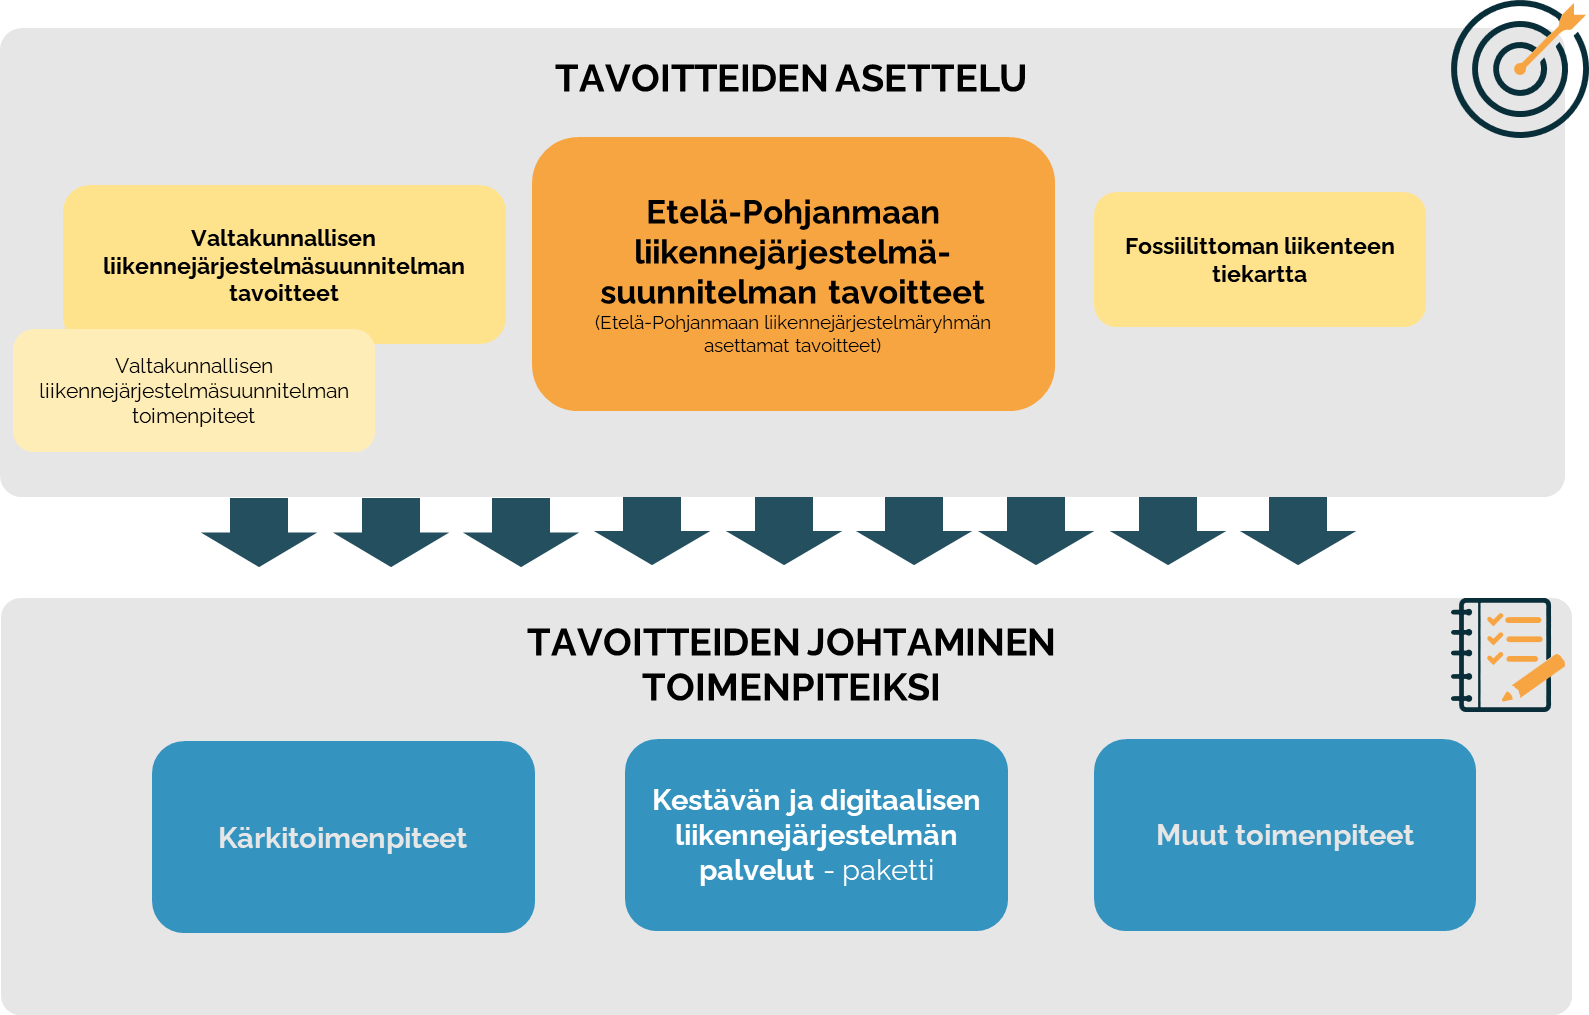 Tavoitteiden asettelu (VLJS tavoitteet + toimenpiteet), Etelä-Pohjanmaan liikennejärjestelmäsuunnitelman tavoitteet ja fossiilittoman liikenteen tiekartta), Tavoitteiden johtaminen toimenpiteiksi ( kärkitoimenpiteet, kestävän ja digitaalisen liikennejärjestelmän palvelut-paketti ja muut toimenpiteet)